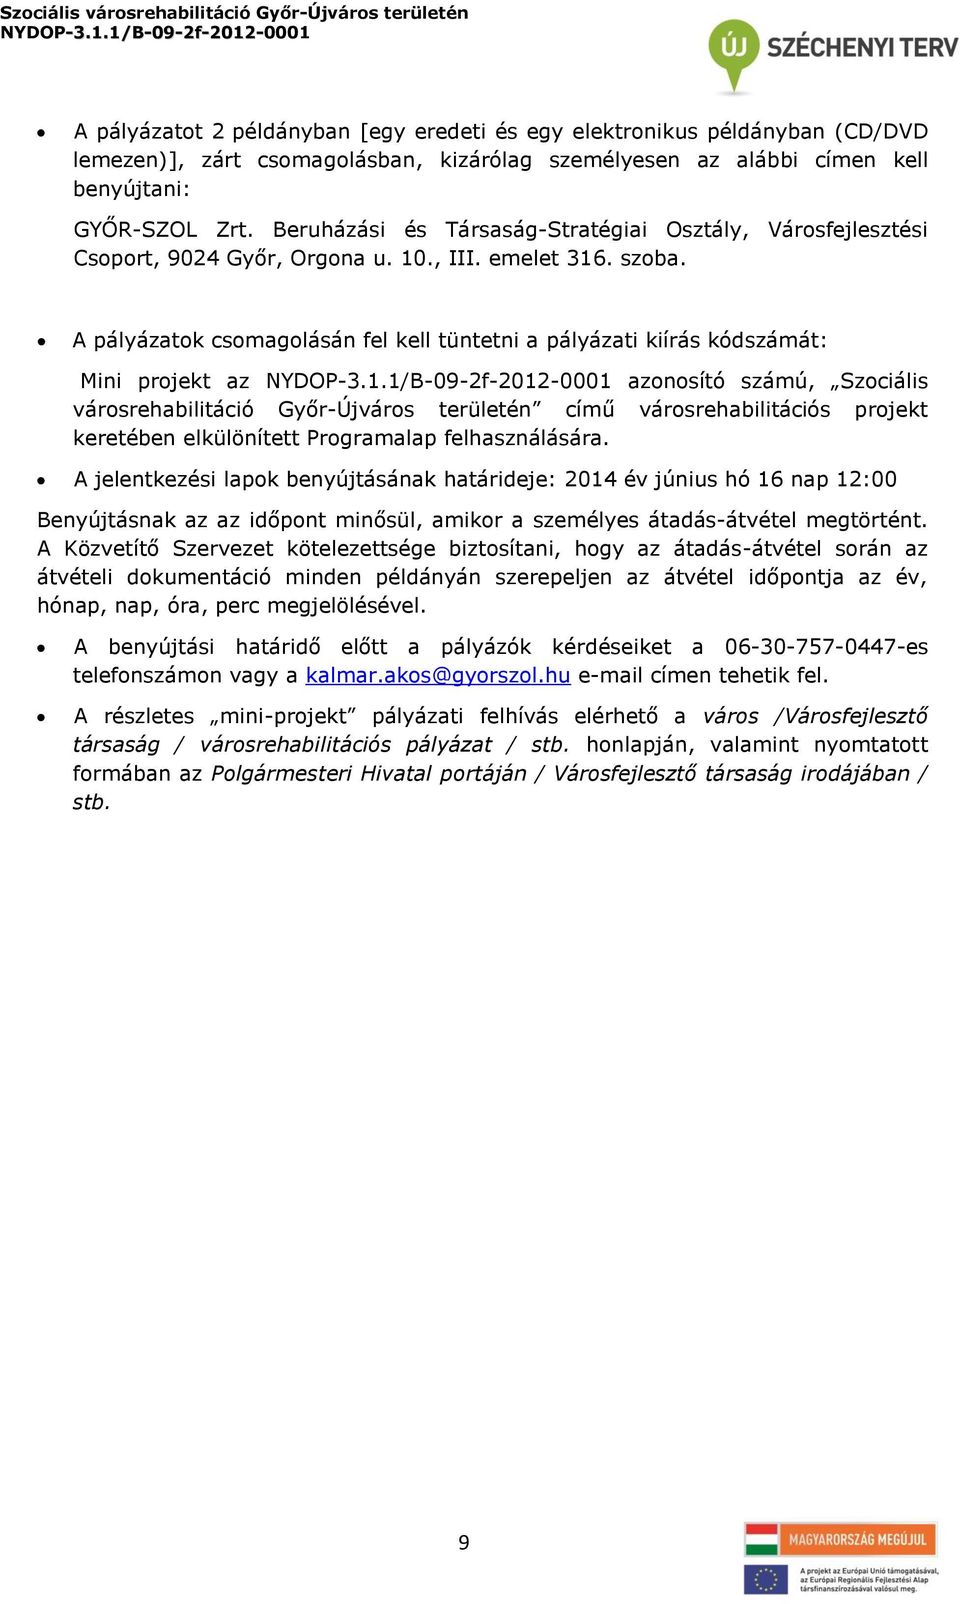 A pályázatok csomagolásán fel kell tüntetni a pályázati kiírás kódszámát: Mini projekt az azonosító számú, Szociális városrehabilitáció Győr-Újváros területén című városrehabilitációs projekt